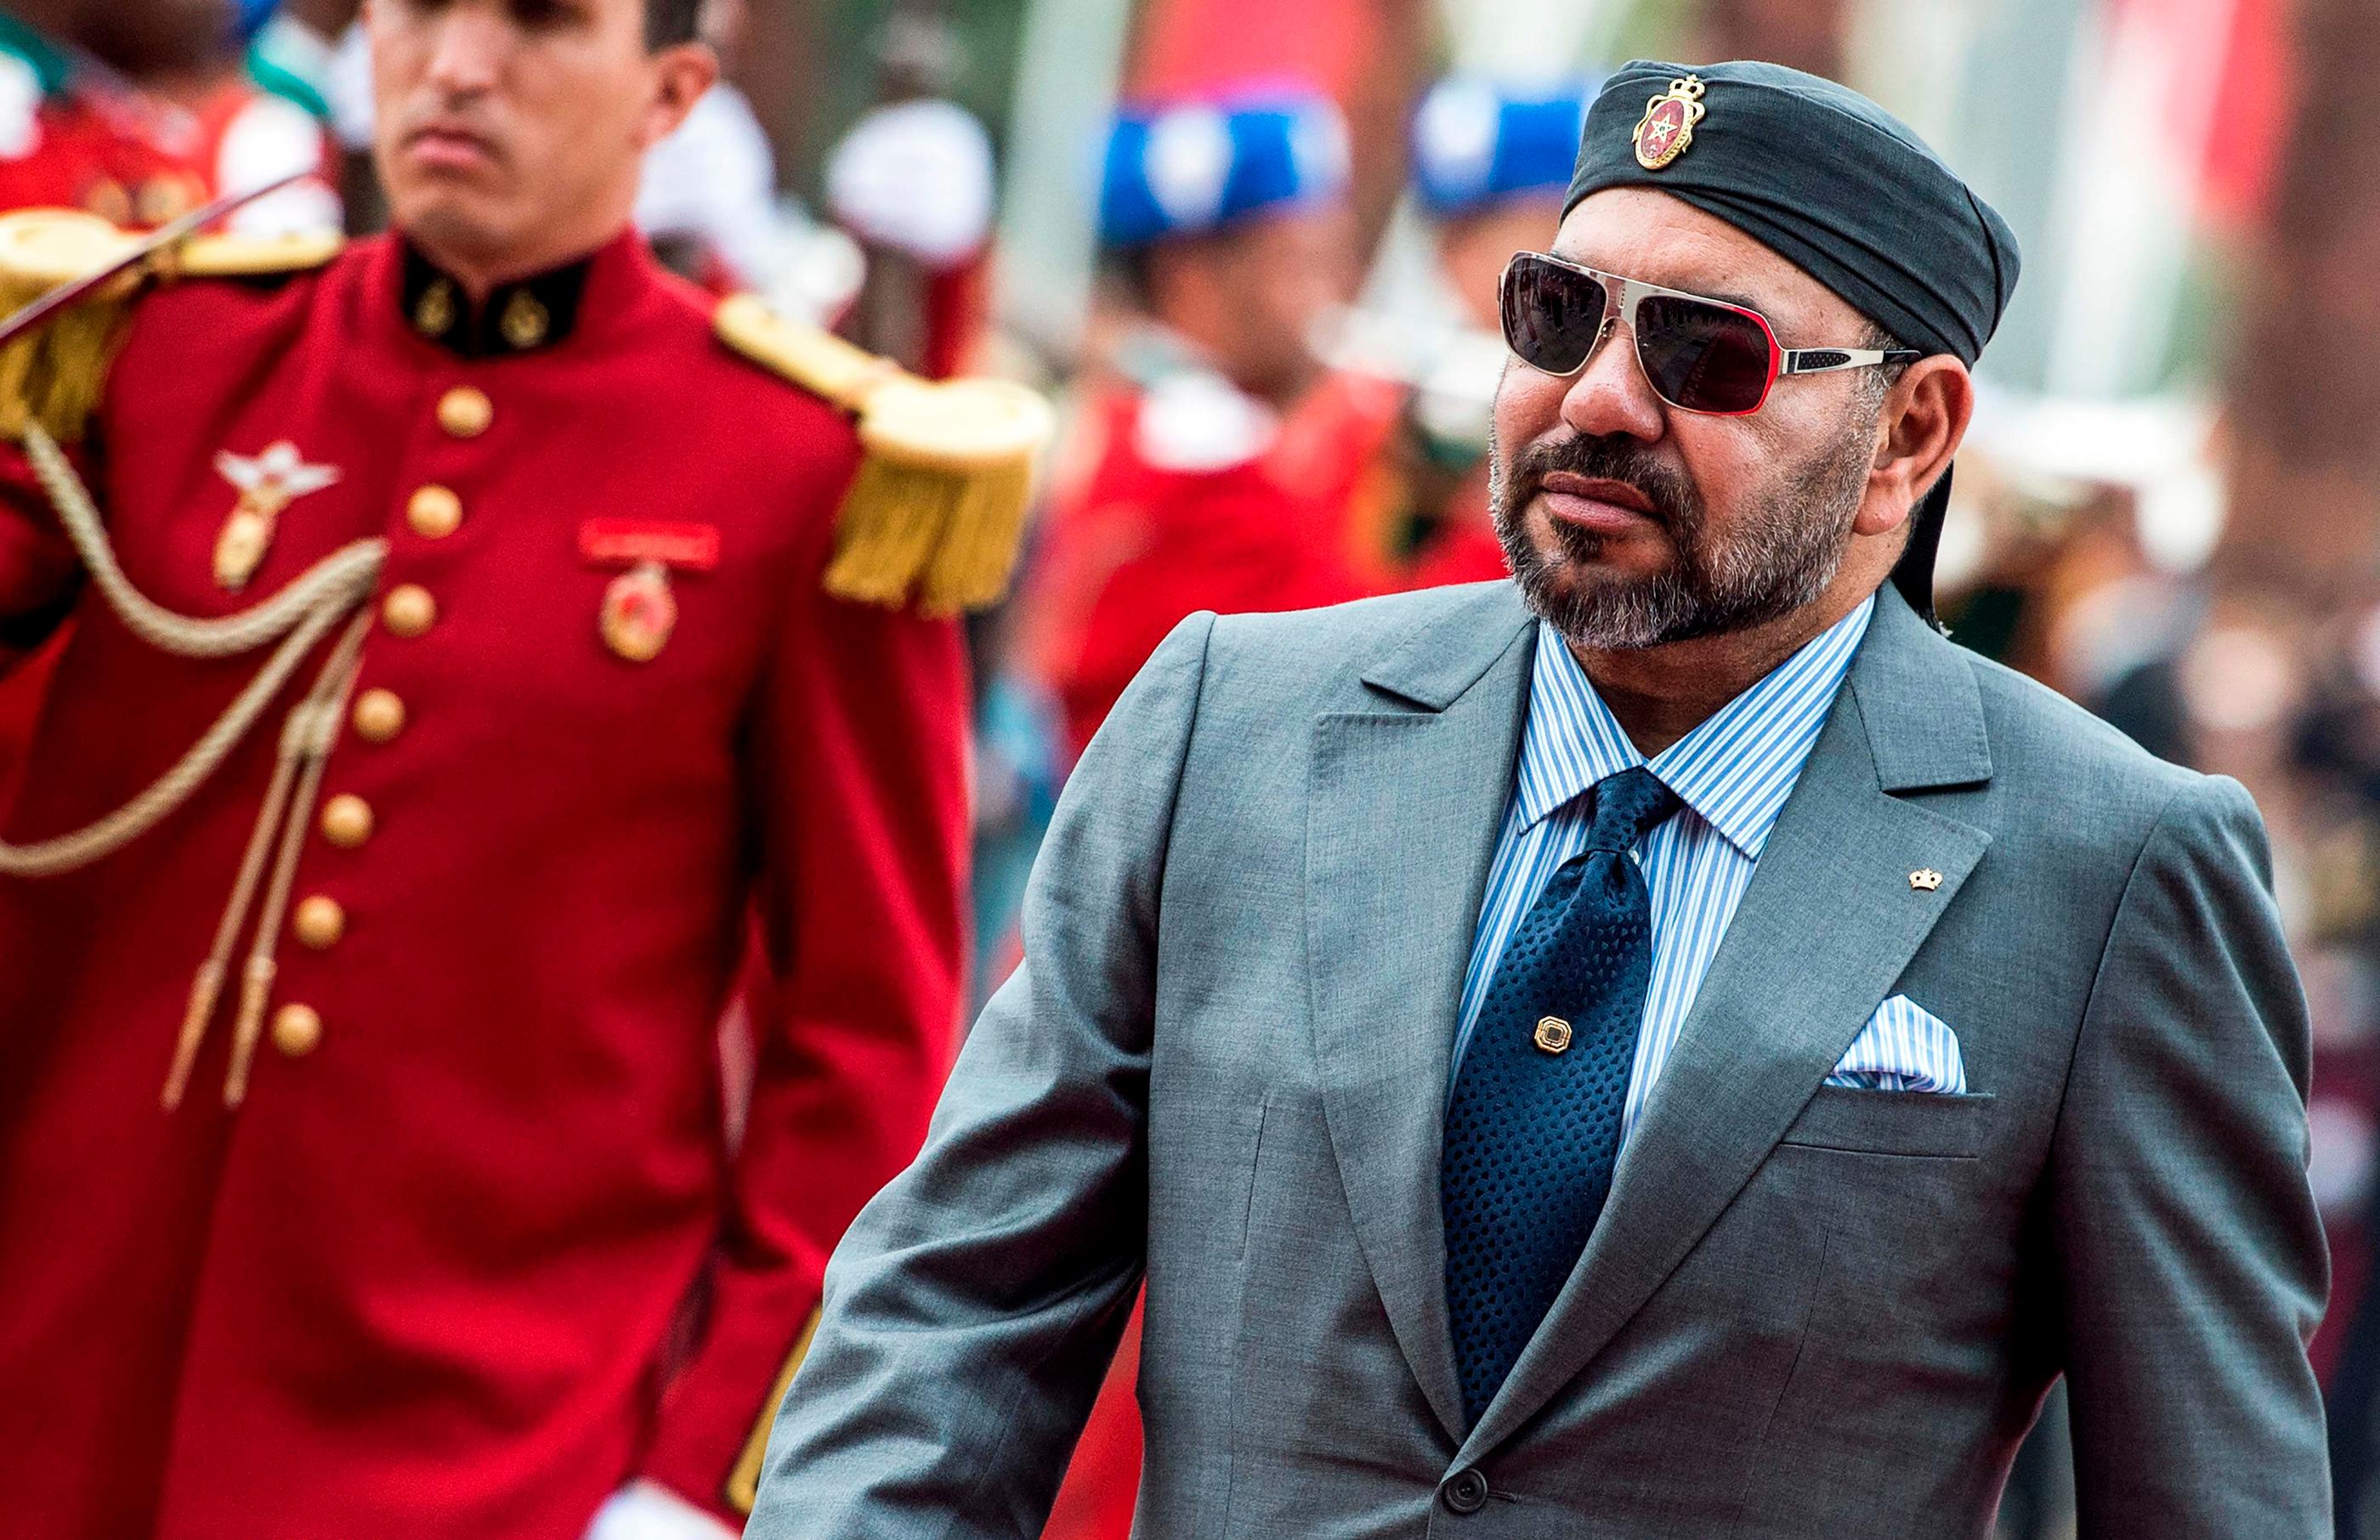 Le roi du Maroc Mohammed VI ne s'est pas encore exprimé depuis la catastrophe. AFP/Fadel Senna